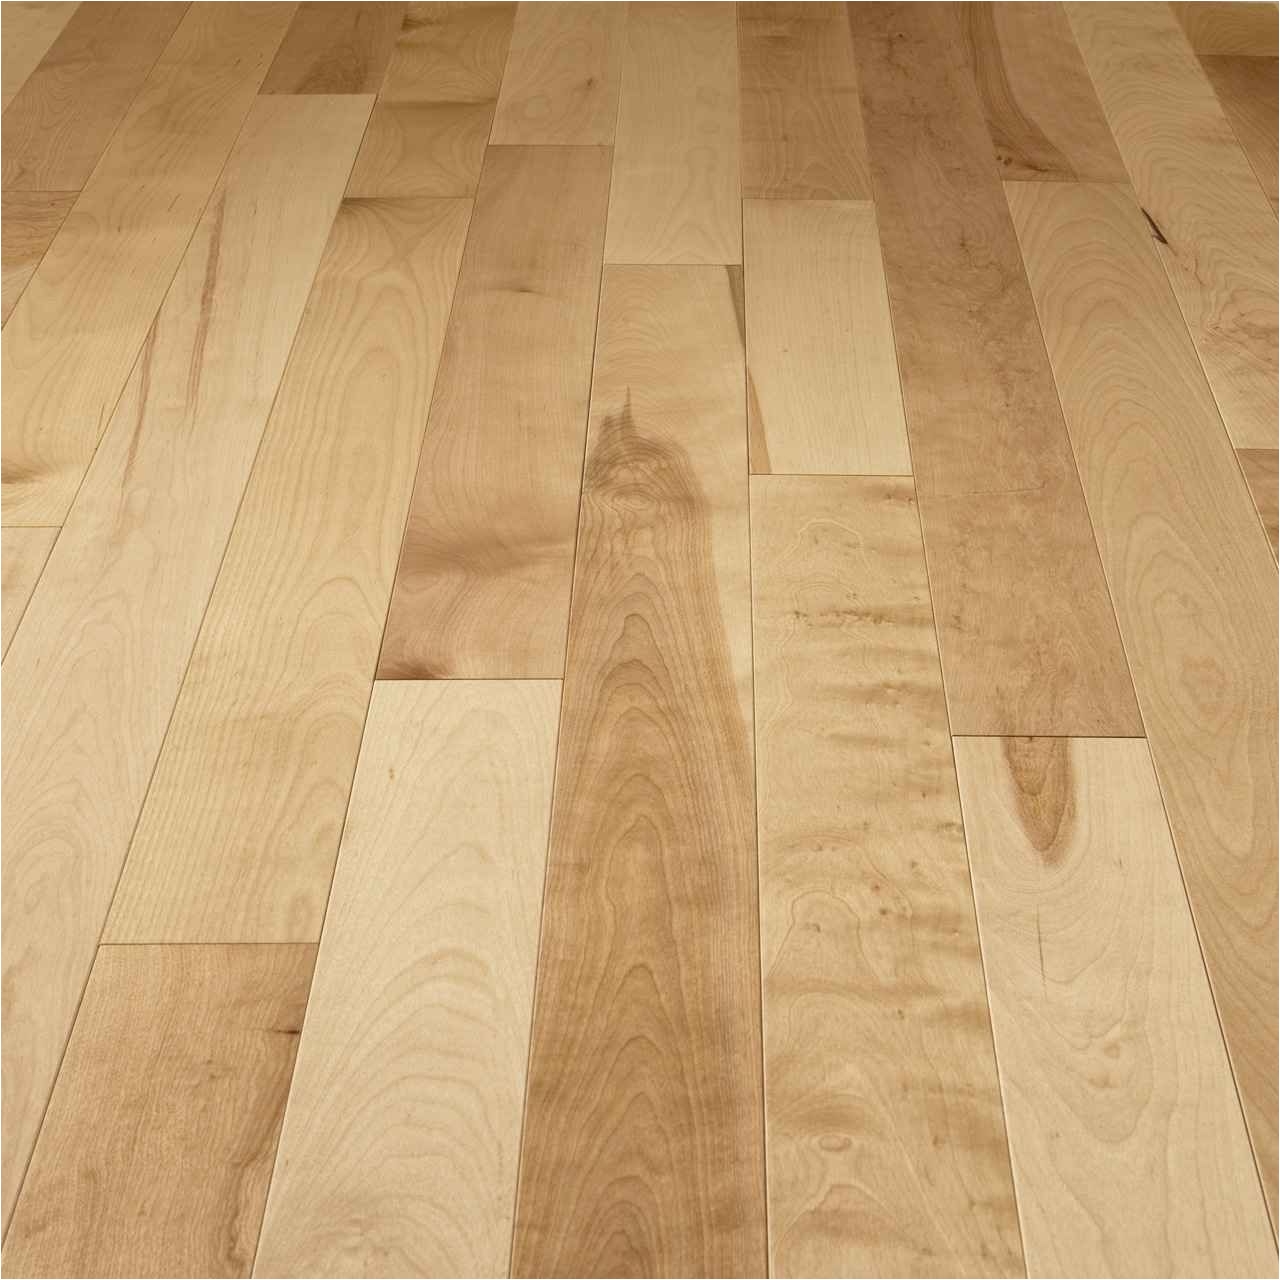 mercier wood floor touch up kit